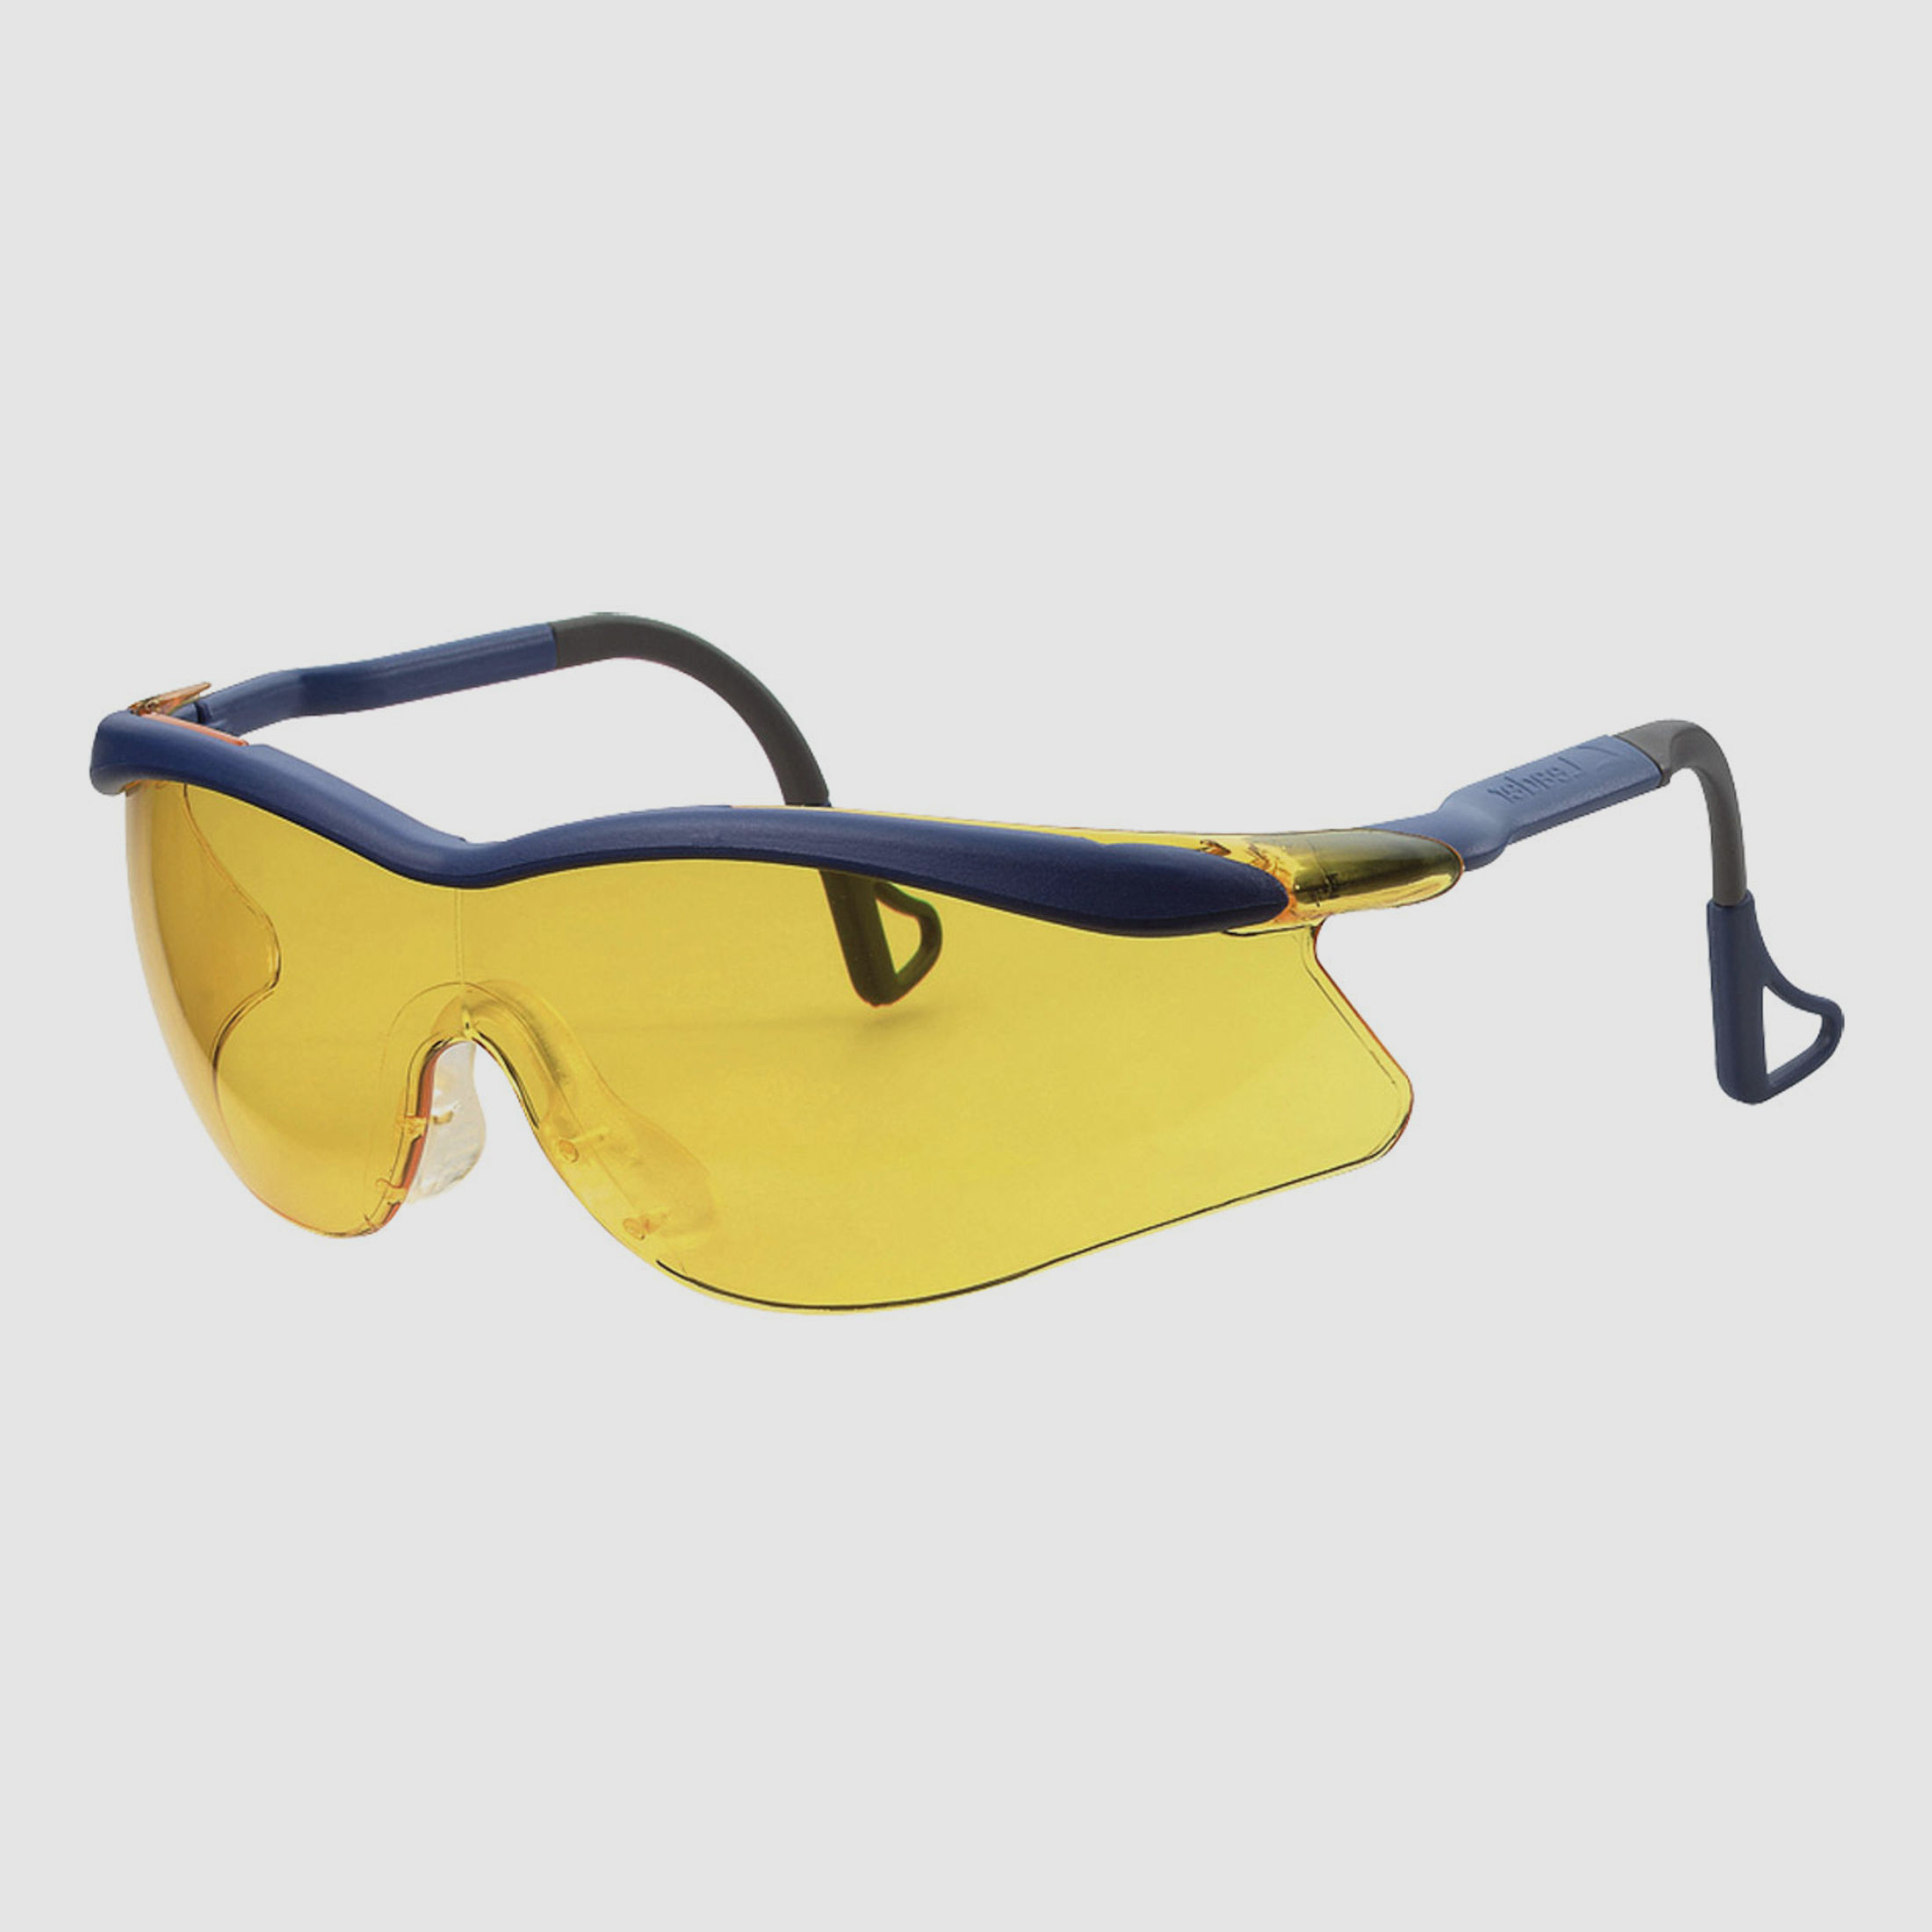 3M™ Peltor™ Schiessbrille QX 2000 gelb